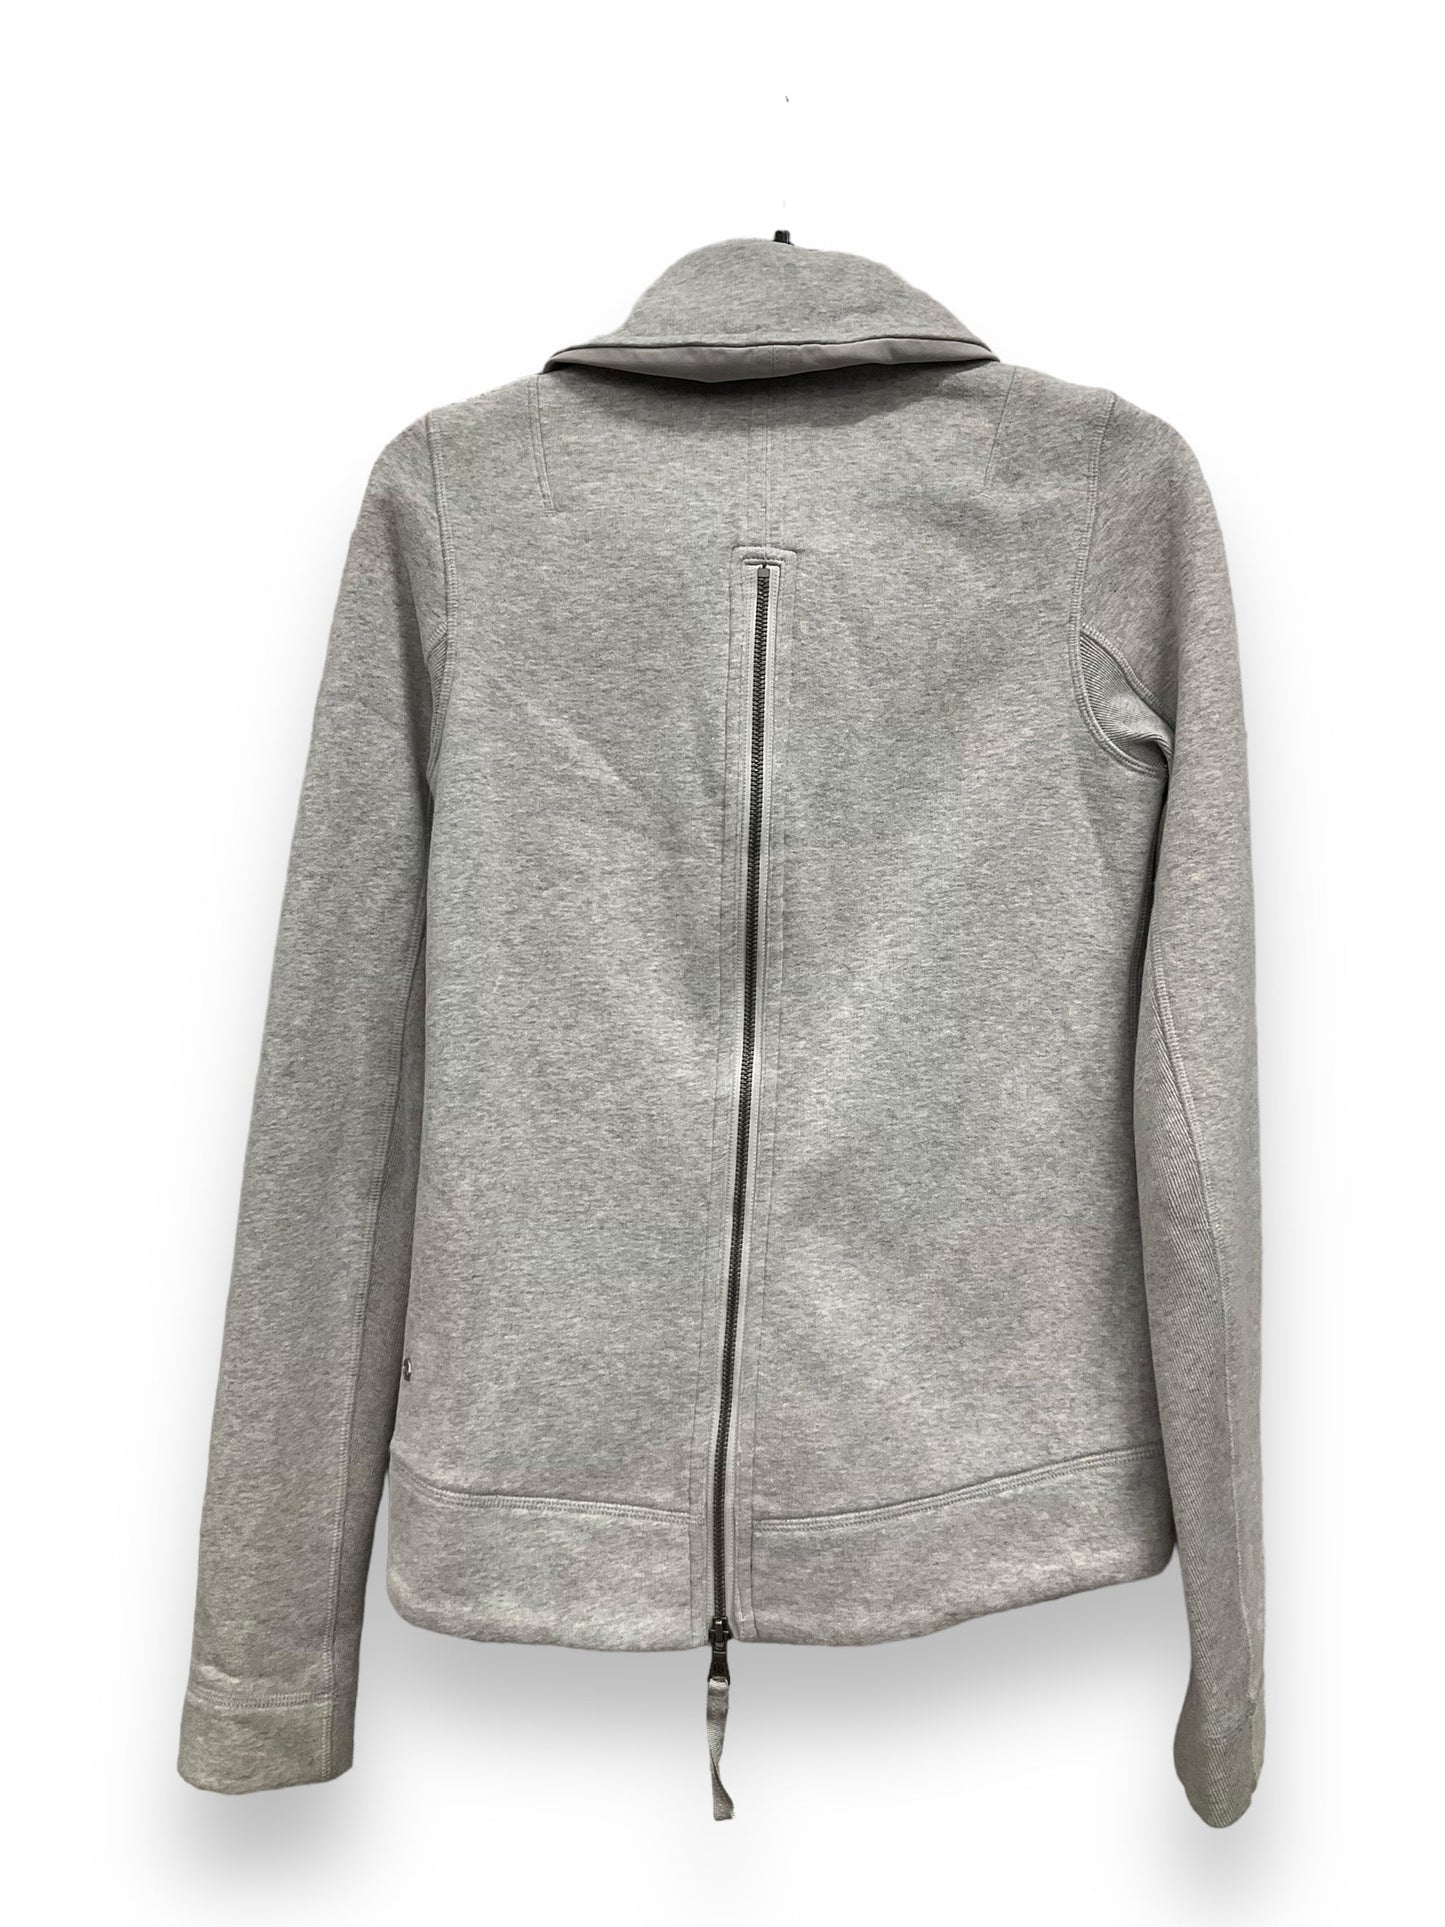 Grey Athletic Jacket Lululemon, Size 6